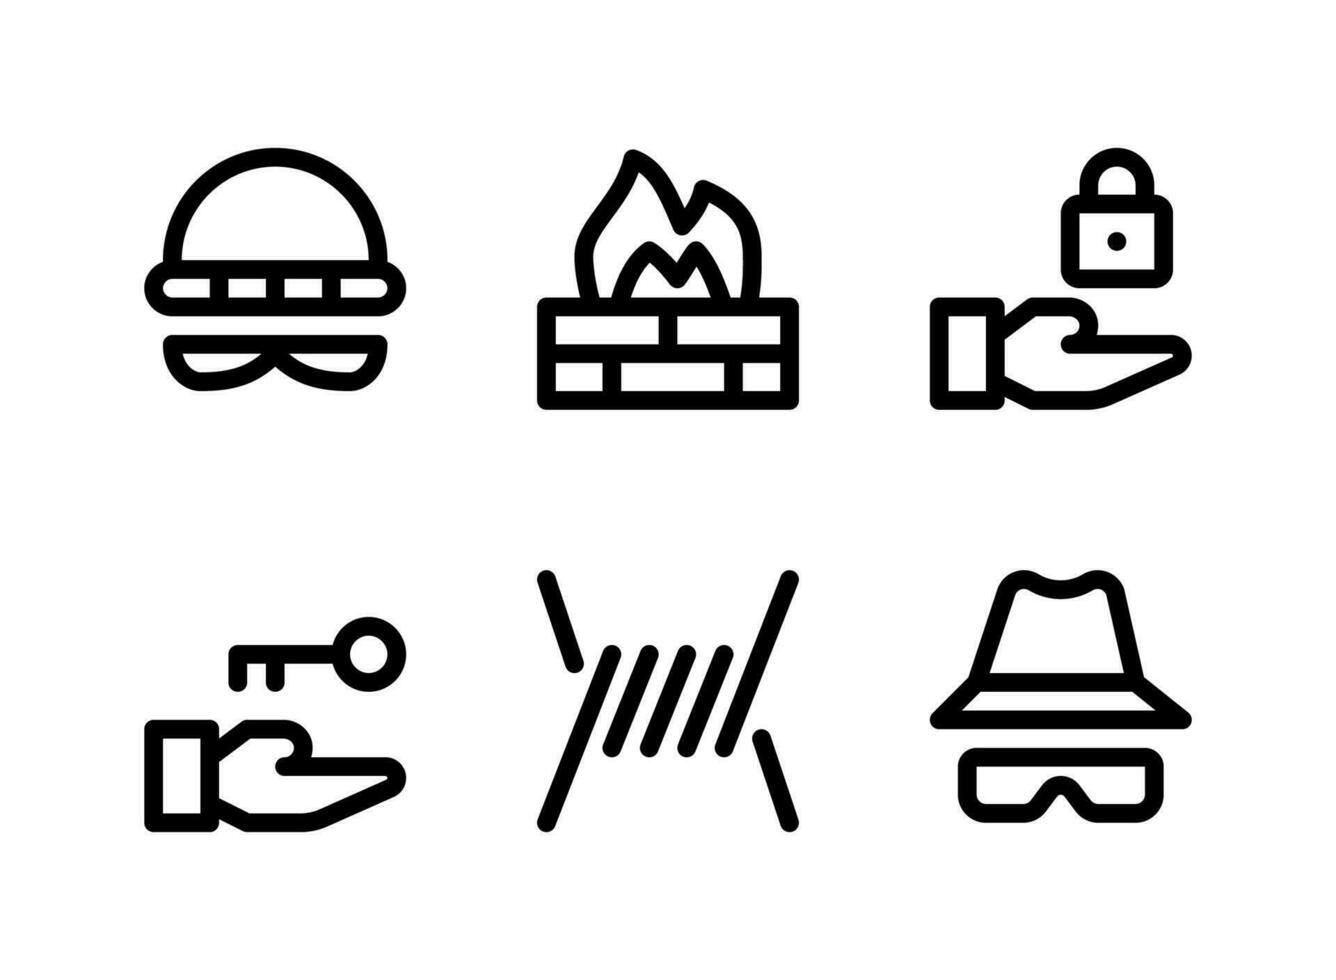 conjunto simples de ícones de linha do vetor relacionados à segurança. contém ícones como ladrão, firewall, bloqueio, farpado e muito mais.